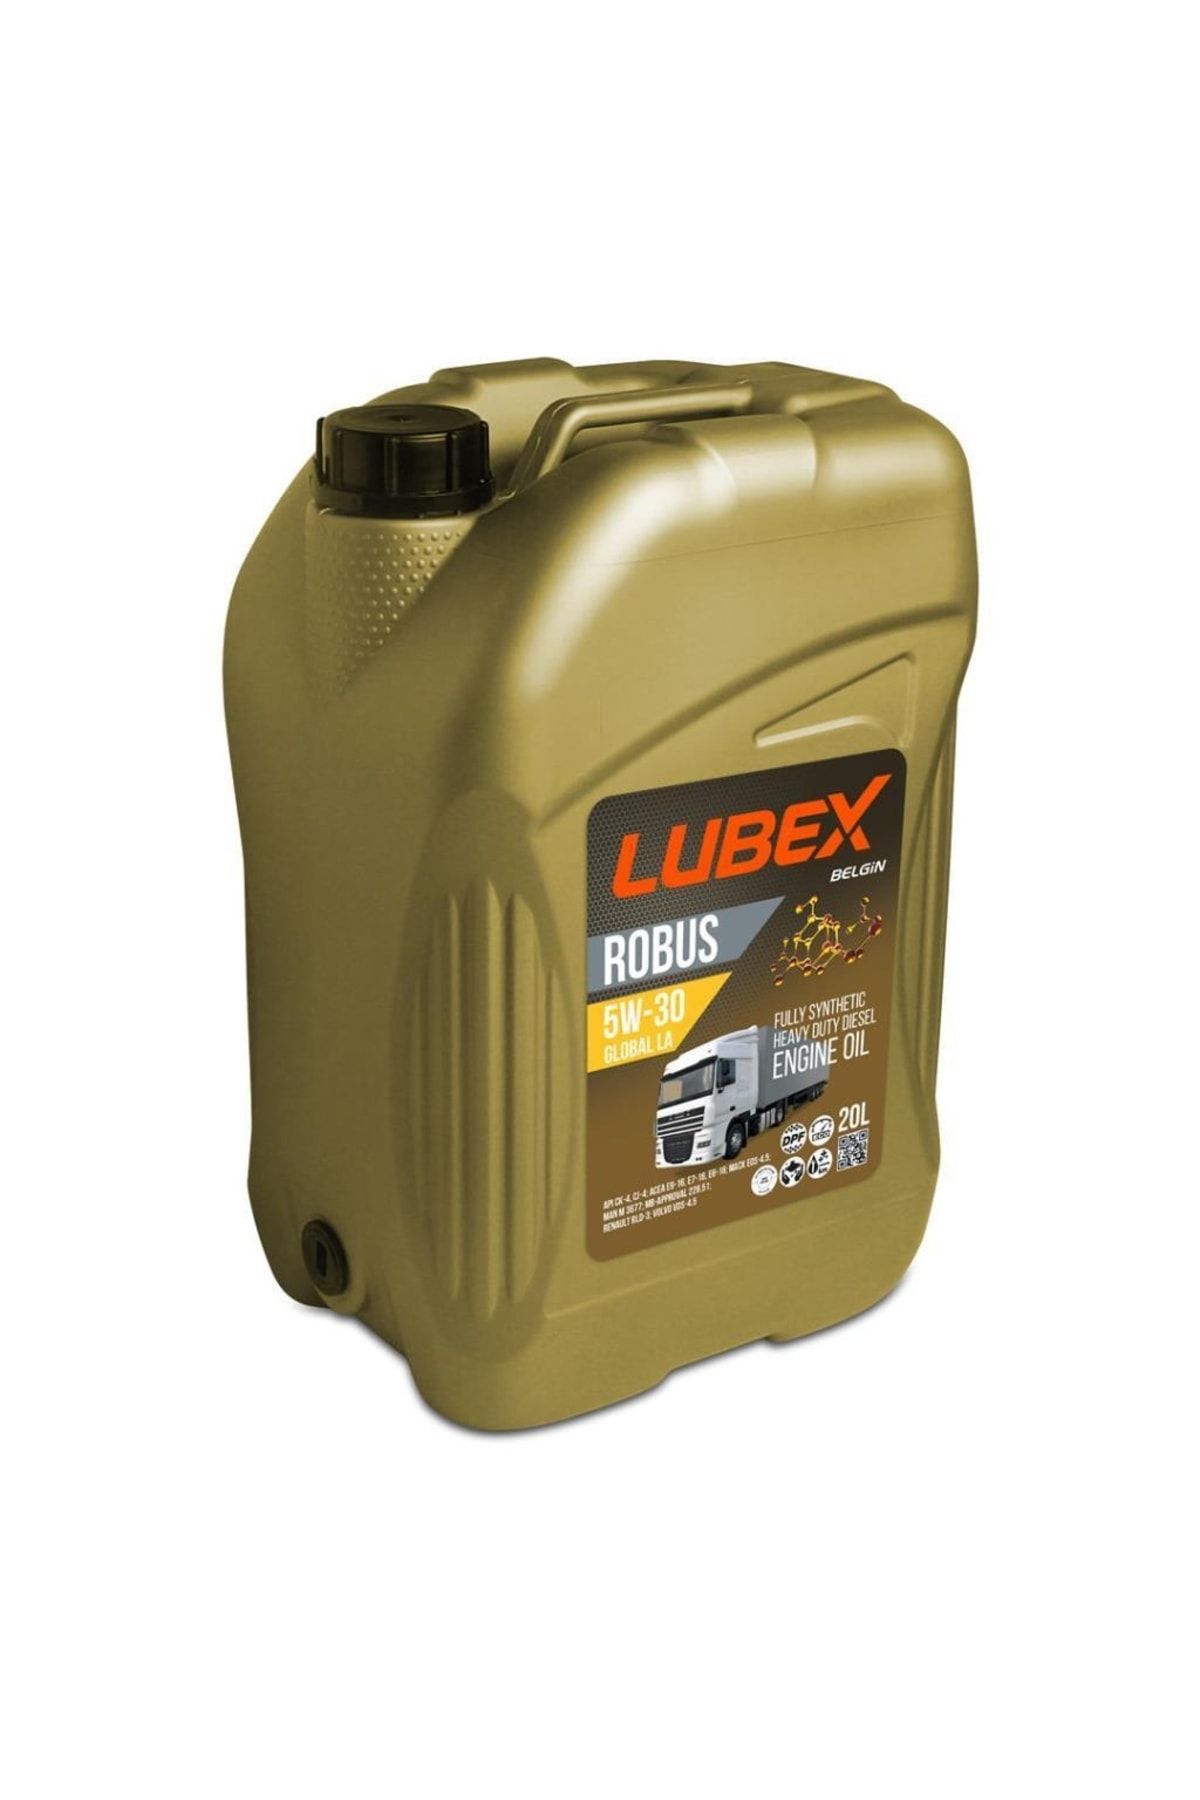 Lubex Robus Global La 5w-30 20 Lt Ağır Hizmet Dizel Motor Yağı